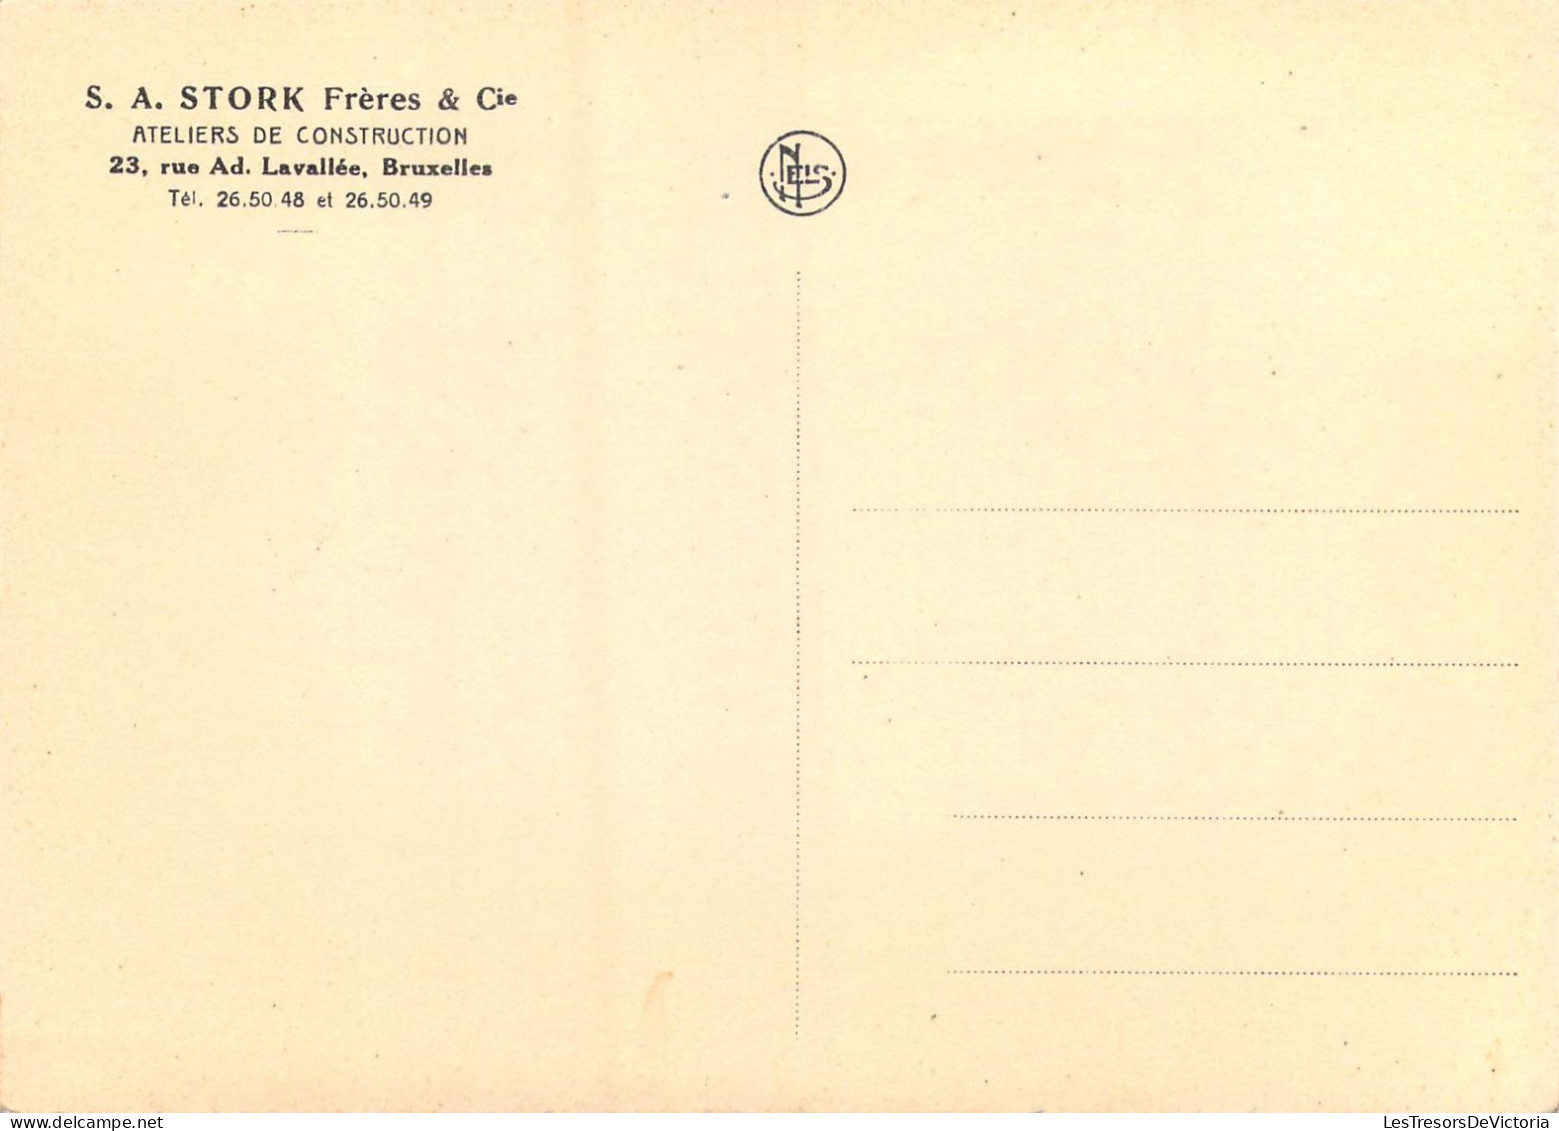 PUBLICITES - S.A. Stork Frères & Cie - Ateliers De Construction - 23 Rue Ad. Lavallée Bruxelles - Carte Postale Ancienne - Publicité